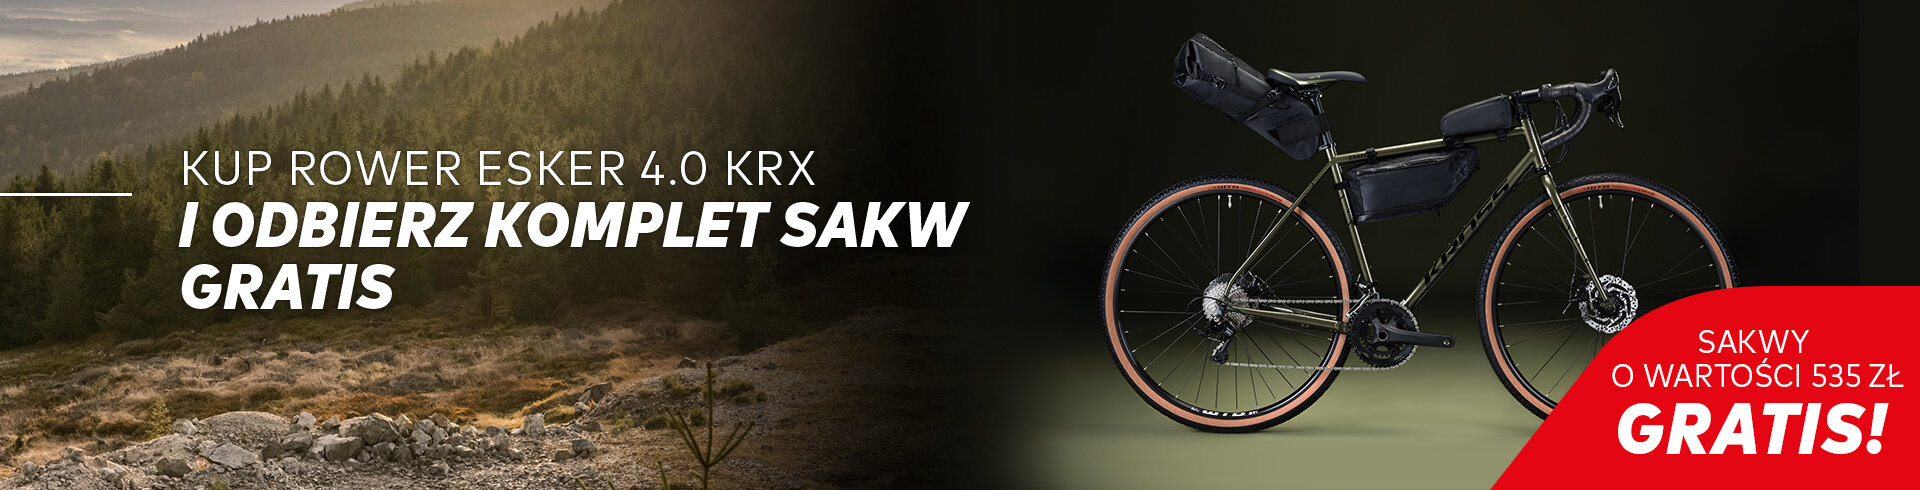 Zestaw toreb gravelowych gratis do roweru Esker 4.0 KRX>>